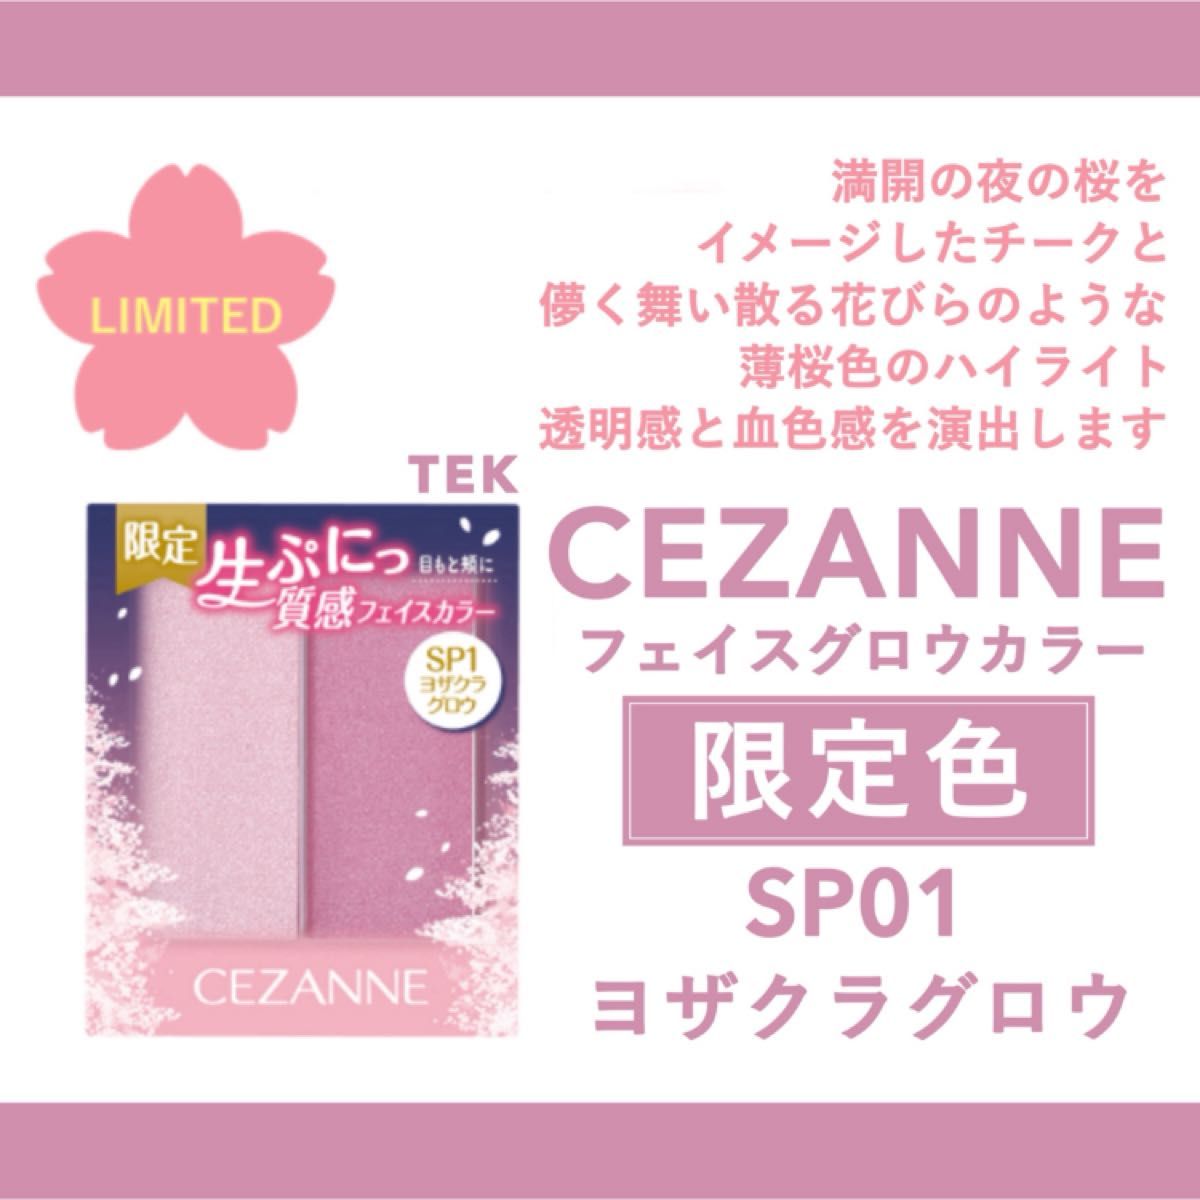 【新品未開封】限定色 CEZANNE セザンヌ フェイスグロウカラー SP1 ヨザクラグロウ